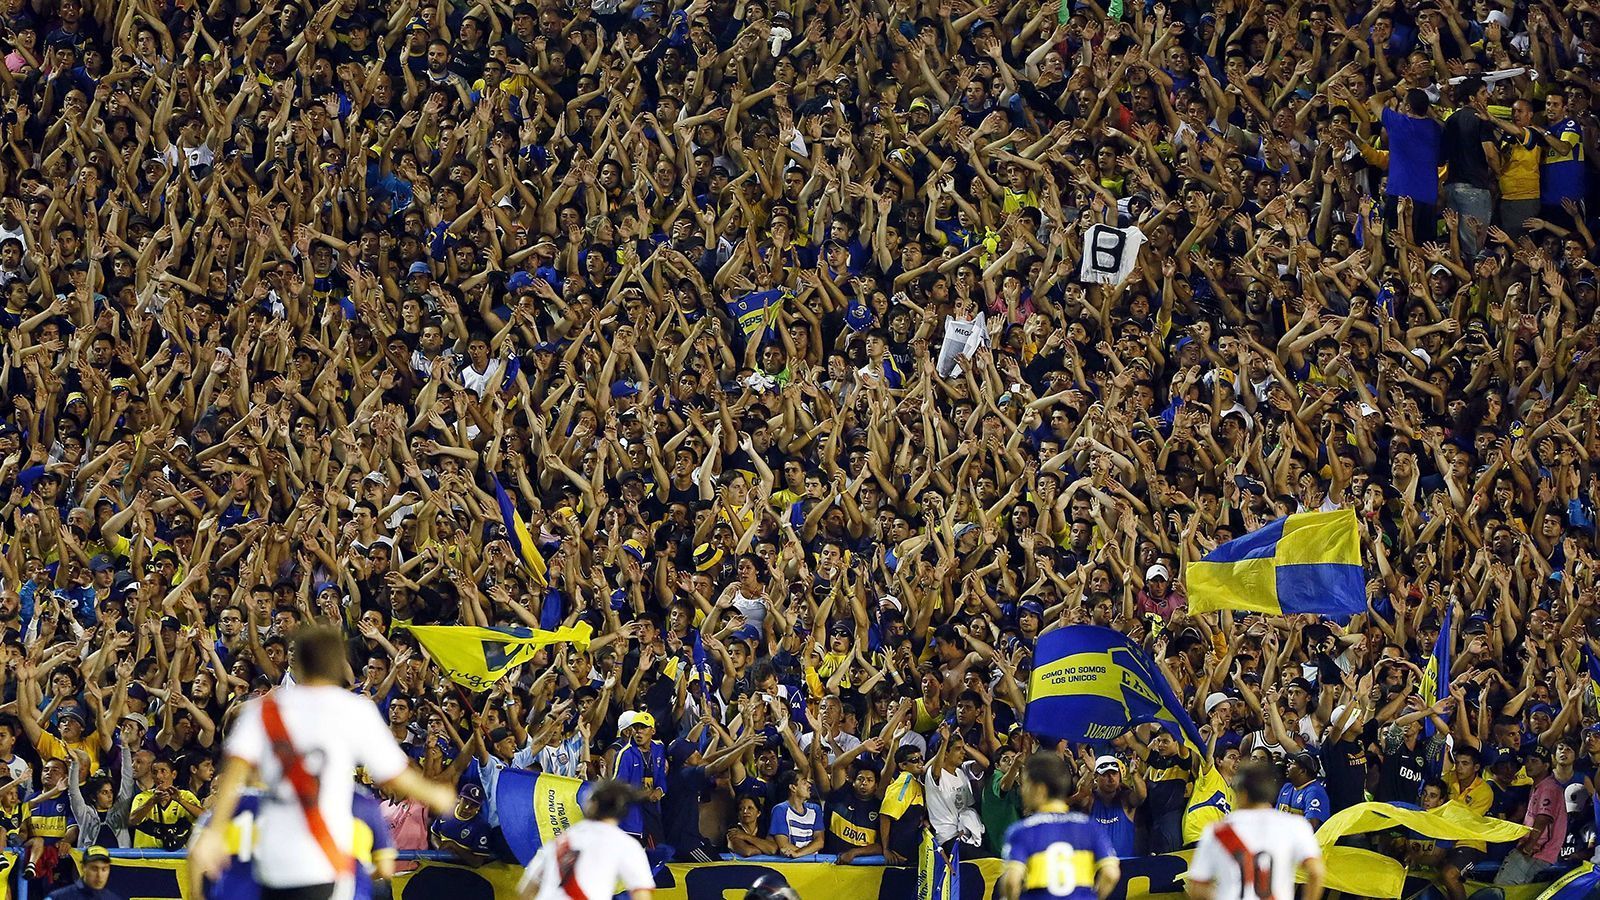 <strong>Platz 2: CA Boca Juniors</strong><br>
                Der Verein mit den meisten Mitgliedern in Argentinien rangiert auf dem zweiten Platz weltweit. 315.879 Mitglieder können die CA Boca Juniors aufweisen. Das reicht nur hauchzart nicht für den ersten Platz.